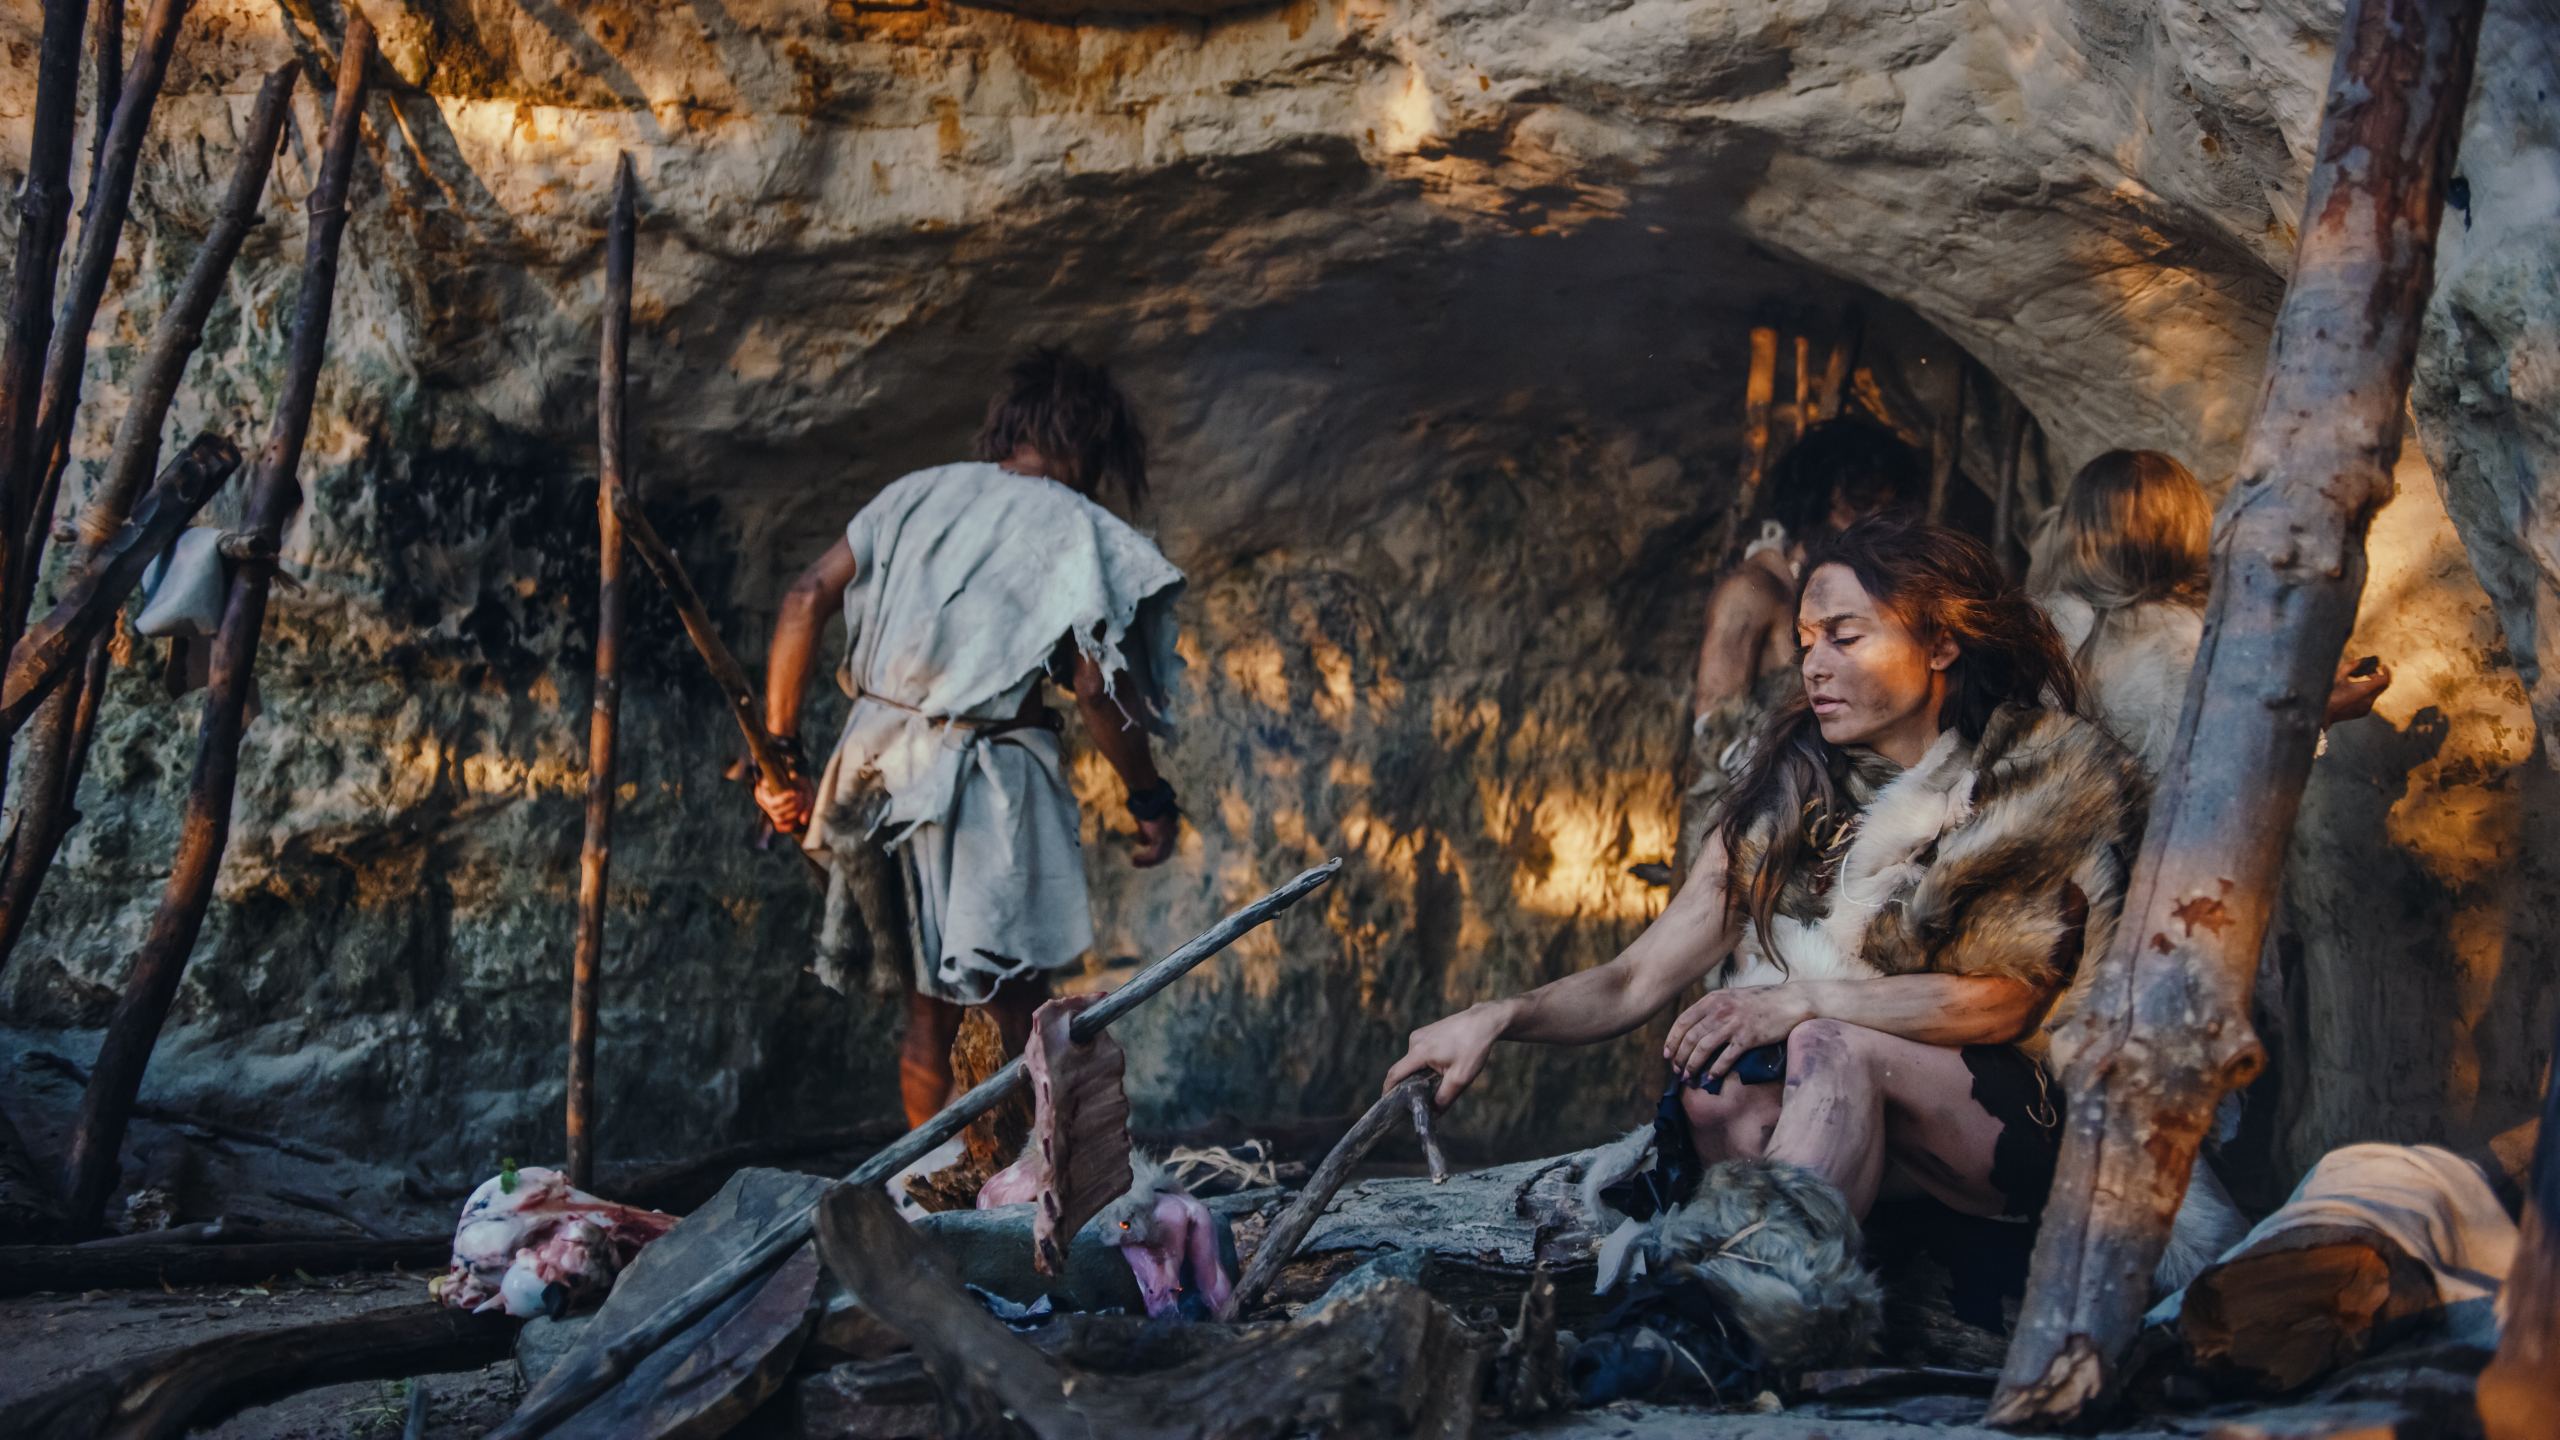 Neandertal Homo Sapiens Ailesi'nin eğlence amaçlı bir görüntüsü. Hayvan Derisi Giyen Avcı-Toplayıcı Kabilesi Bir Mağarada Yaşıyor. Lider Avlanmadan Hayvan Avı Getiriyor, Kadın Şenlik Ateşinde Yemek Pişiriyor, Kız Duvarlara Çizim Yapıyor Sanat Yaratıyor.